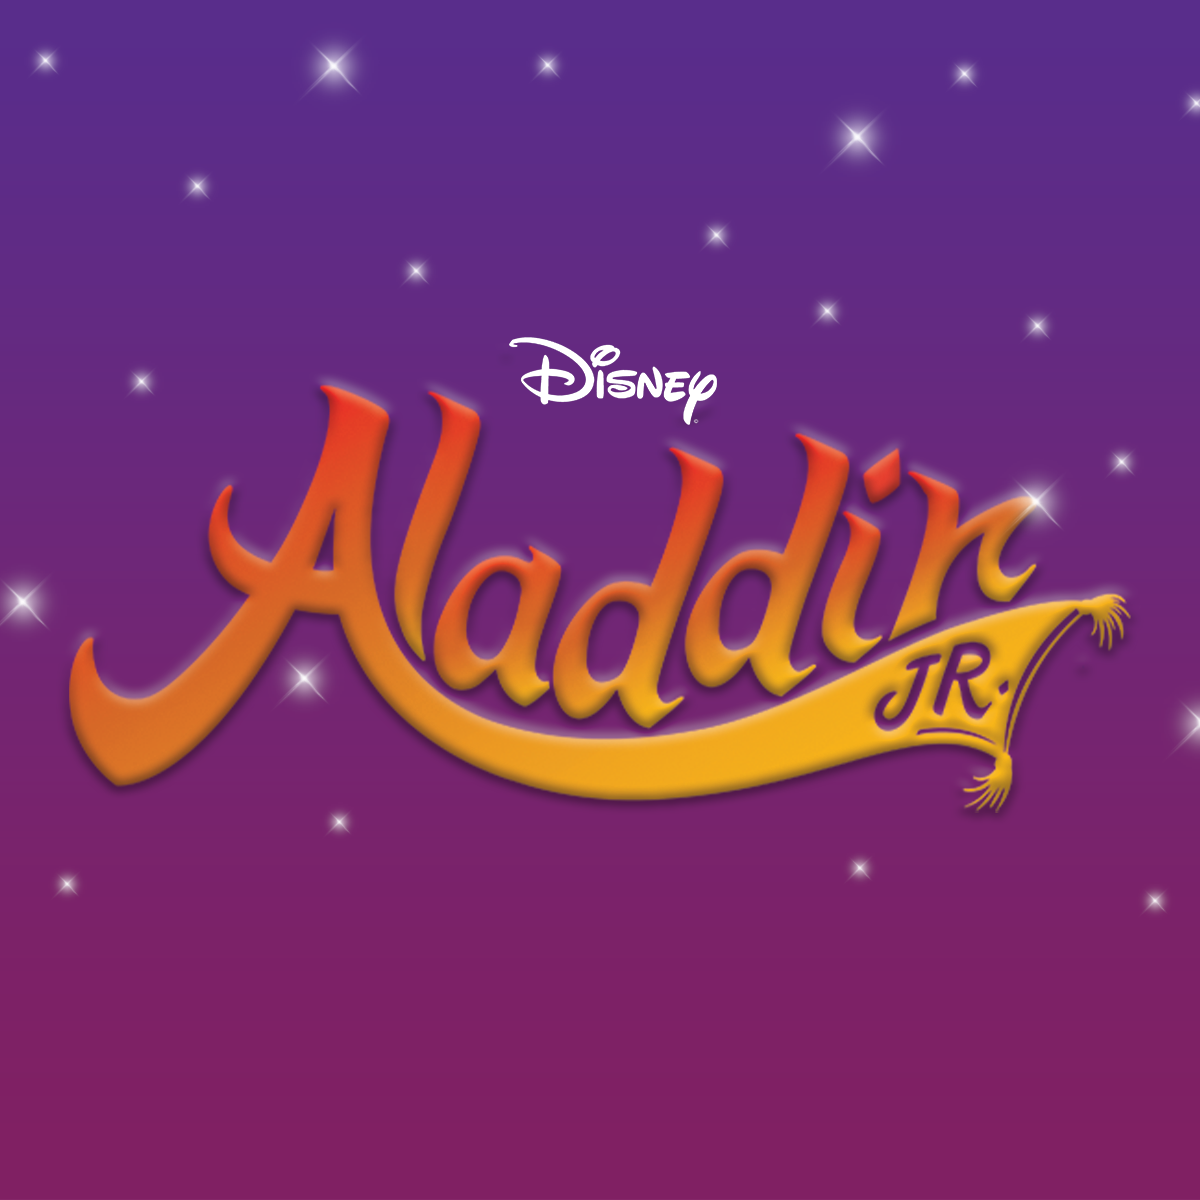 Riker Hill 'Aladdin' Playbill Ad